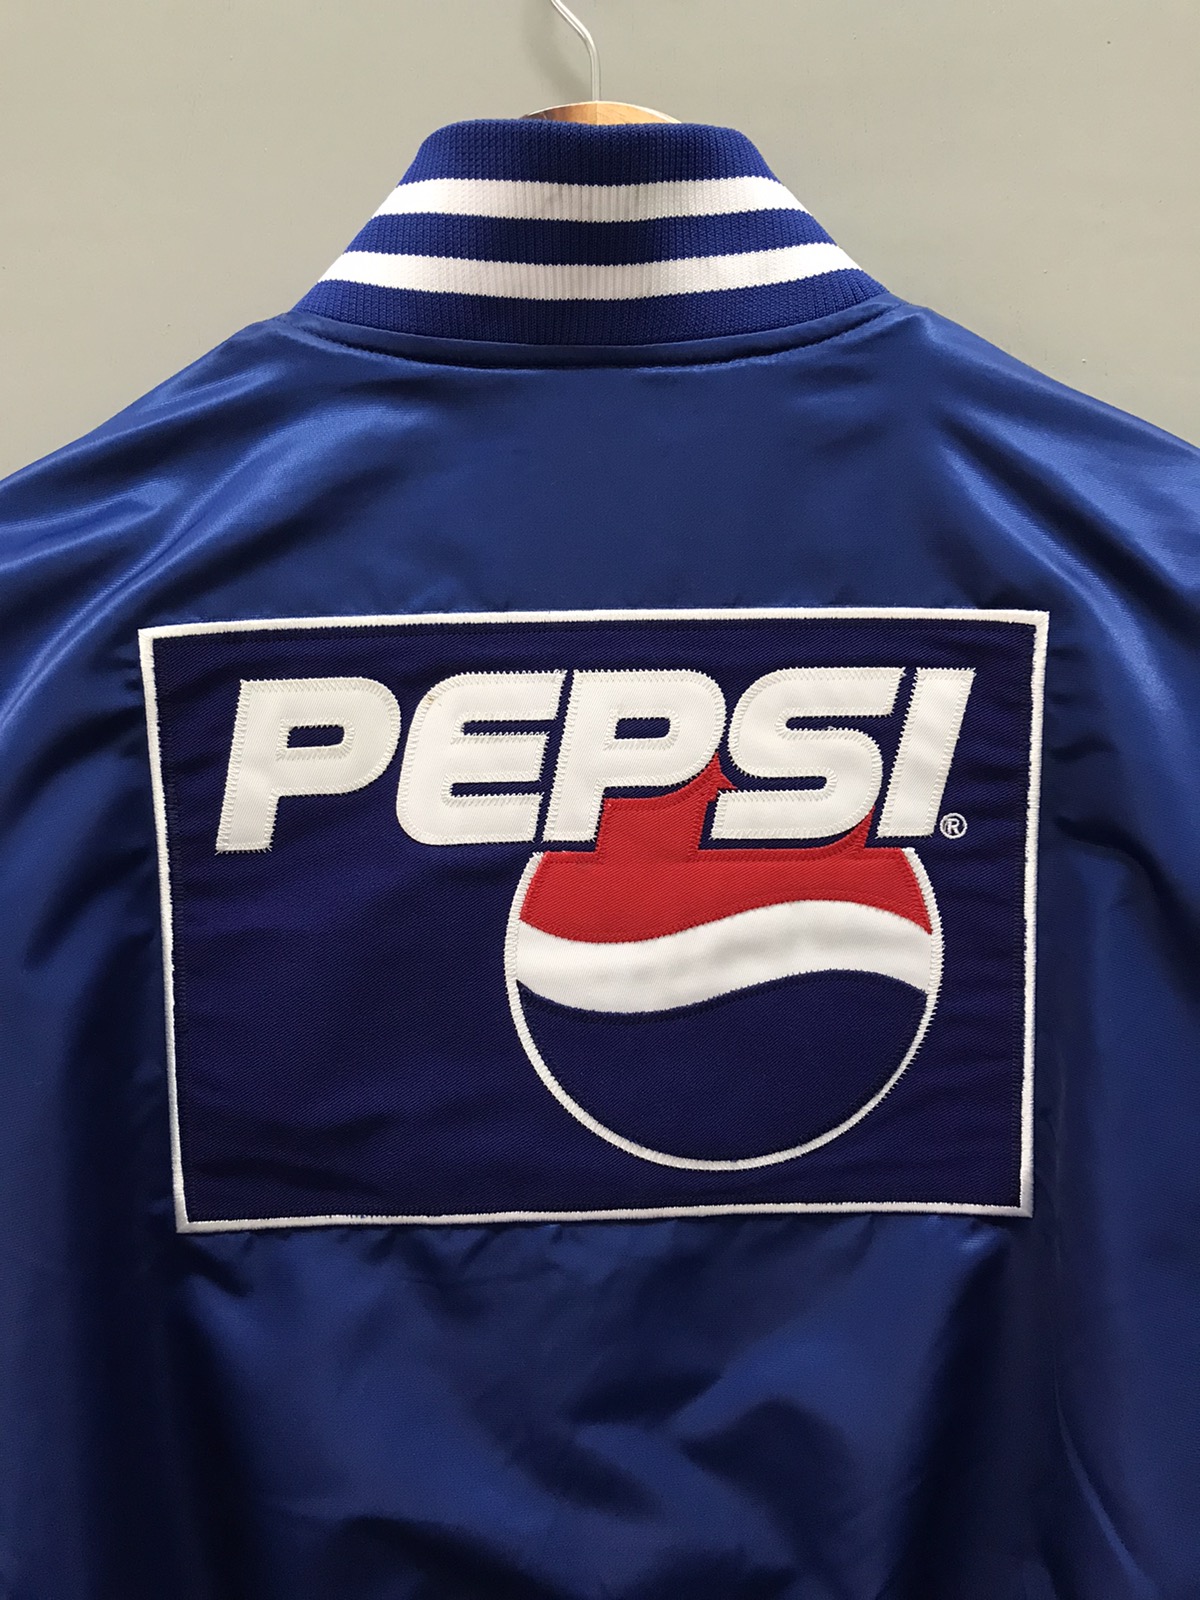 Vintage - Vintage Mlb Ichiro Suzuki Pepsi Varsity Jacket